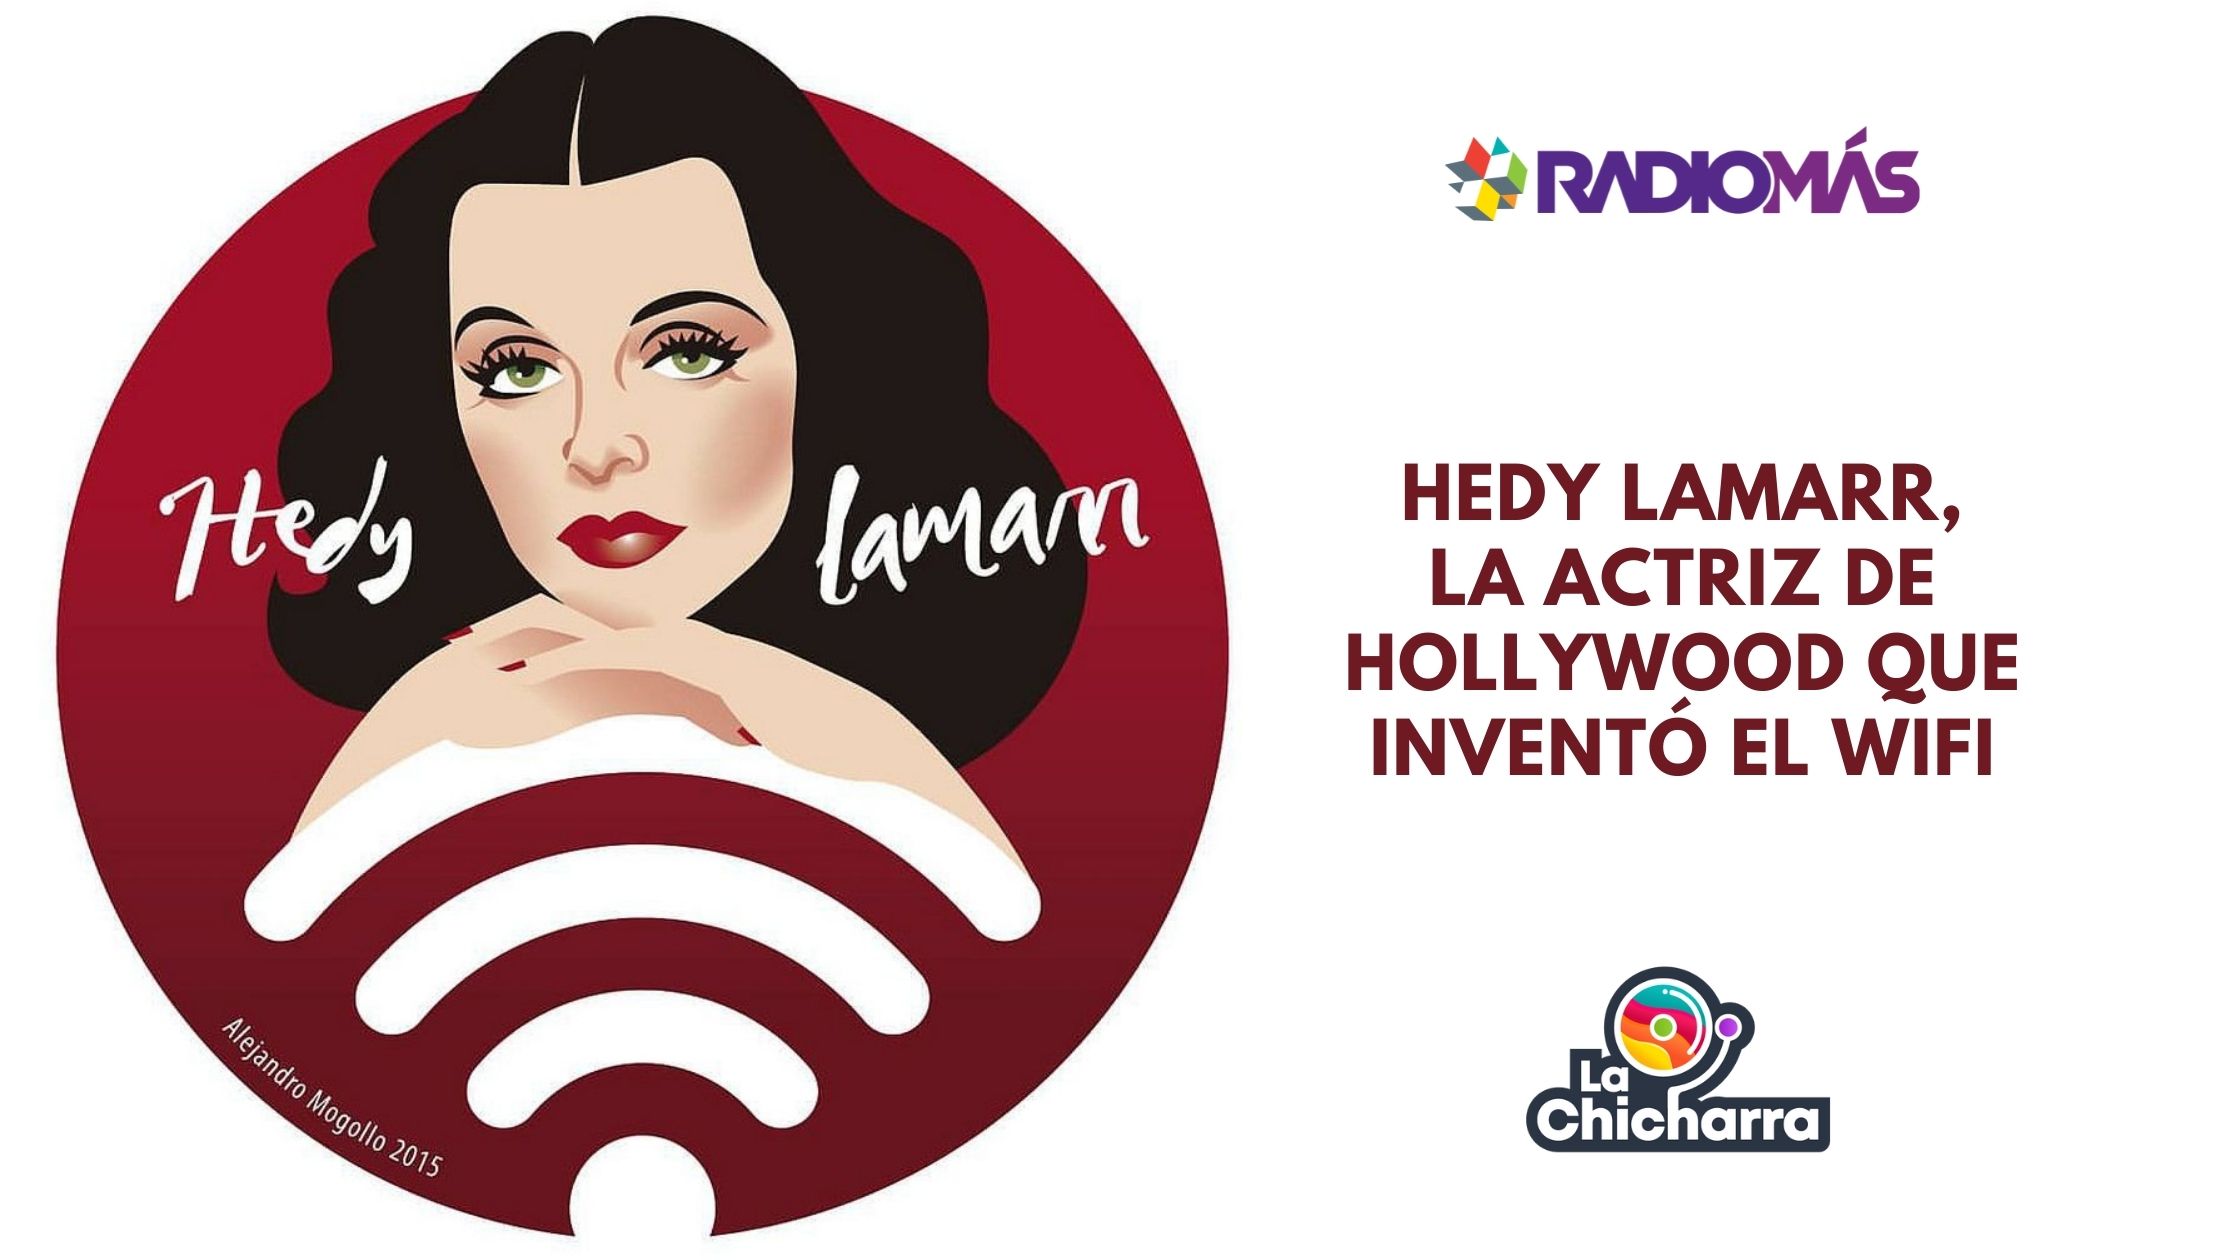 Hedy Lamarr, la actriz de Hollywood que inventó el wifi